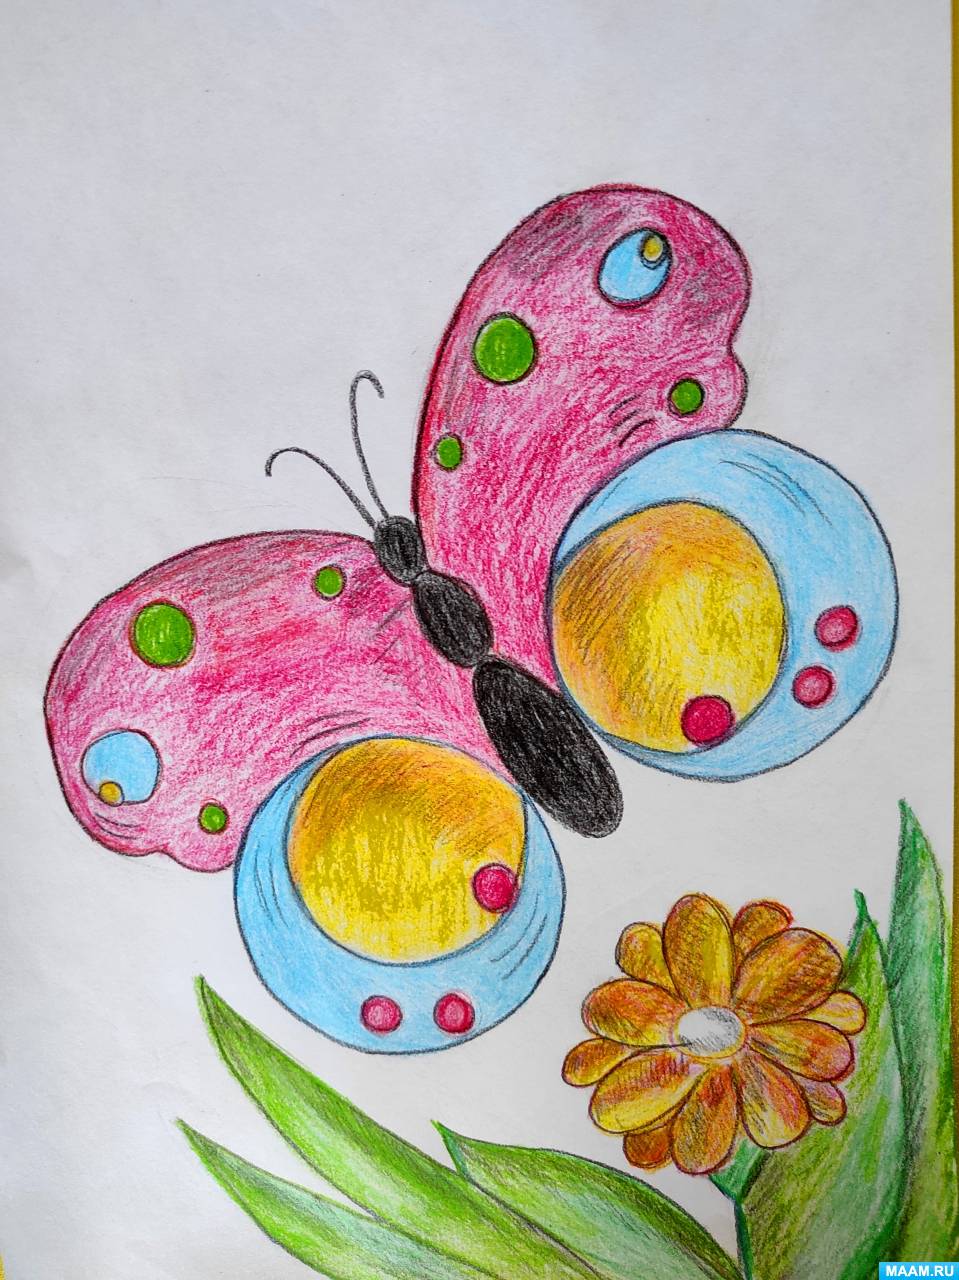 Мастер-класс по рисованию цветными карандашами «Бабочка на лугу» с детьми старшего дошкольного возраста